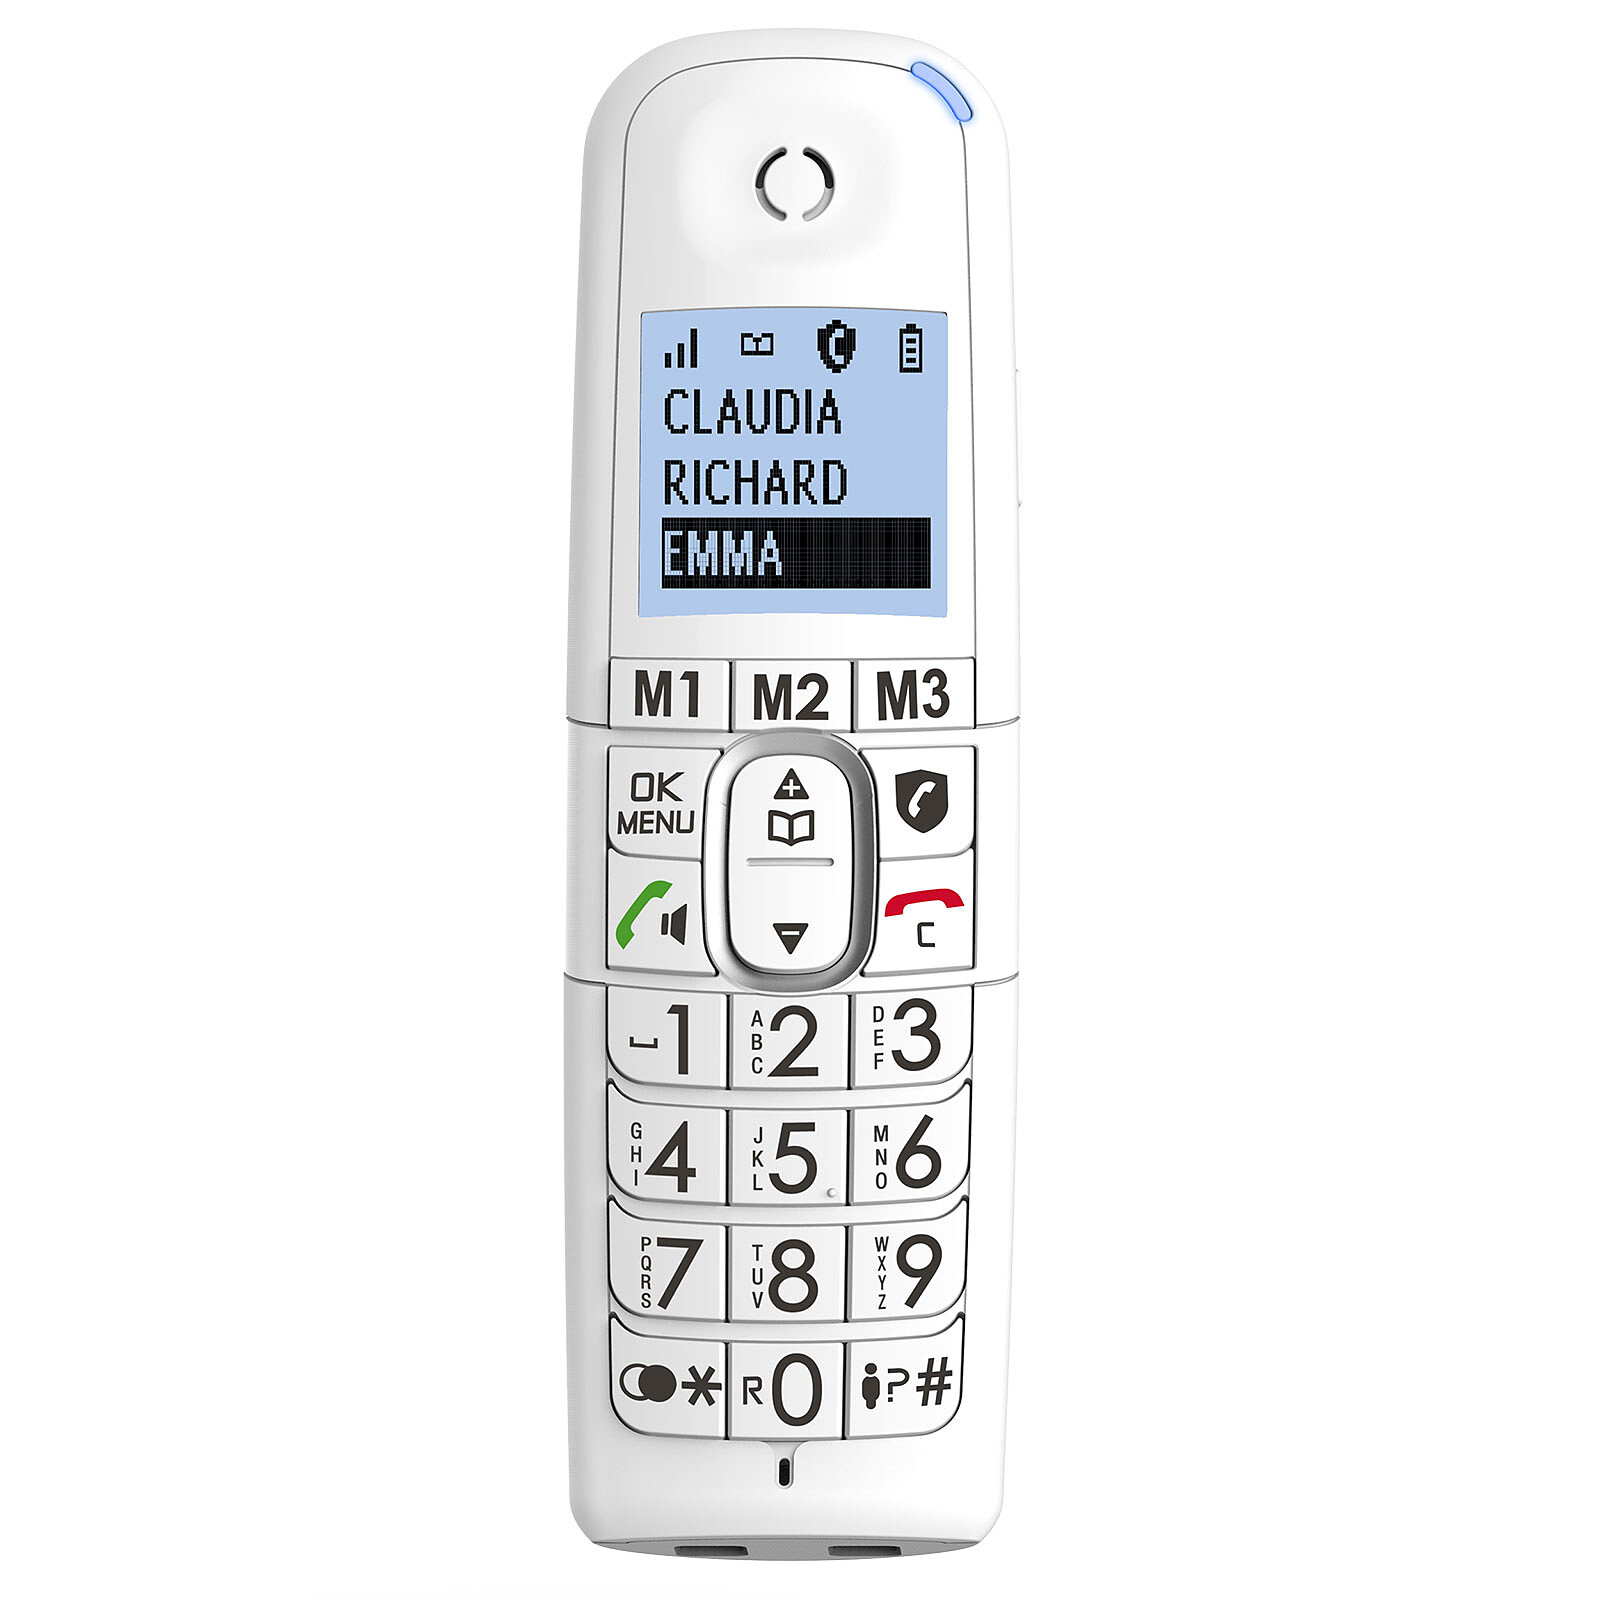 Téléphone Fixe sans fil senior Alcatel XL585 Voice Duo pour sénior